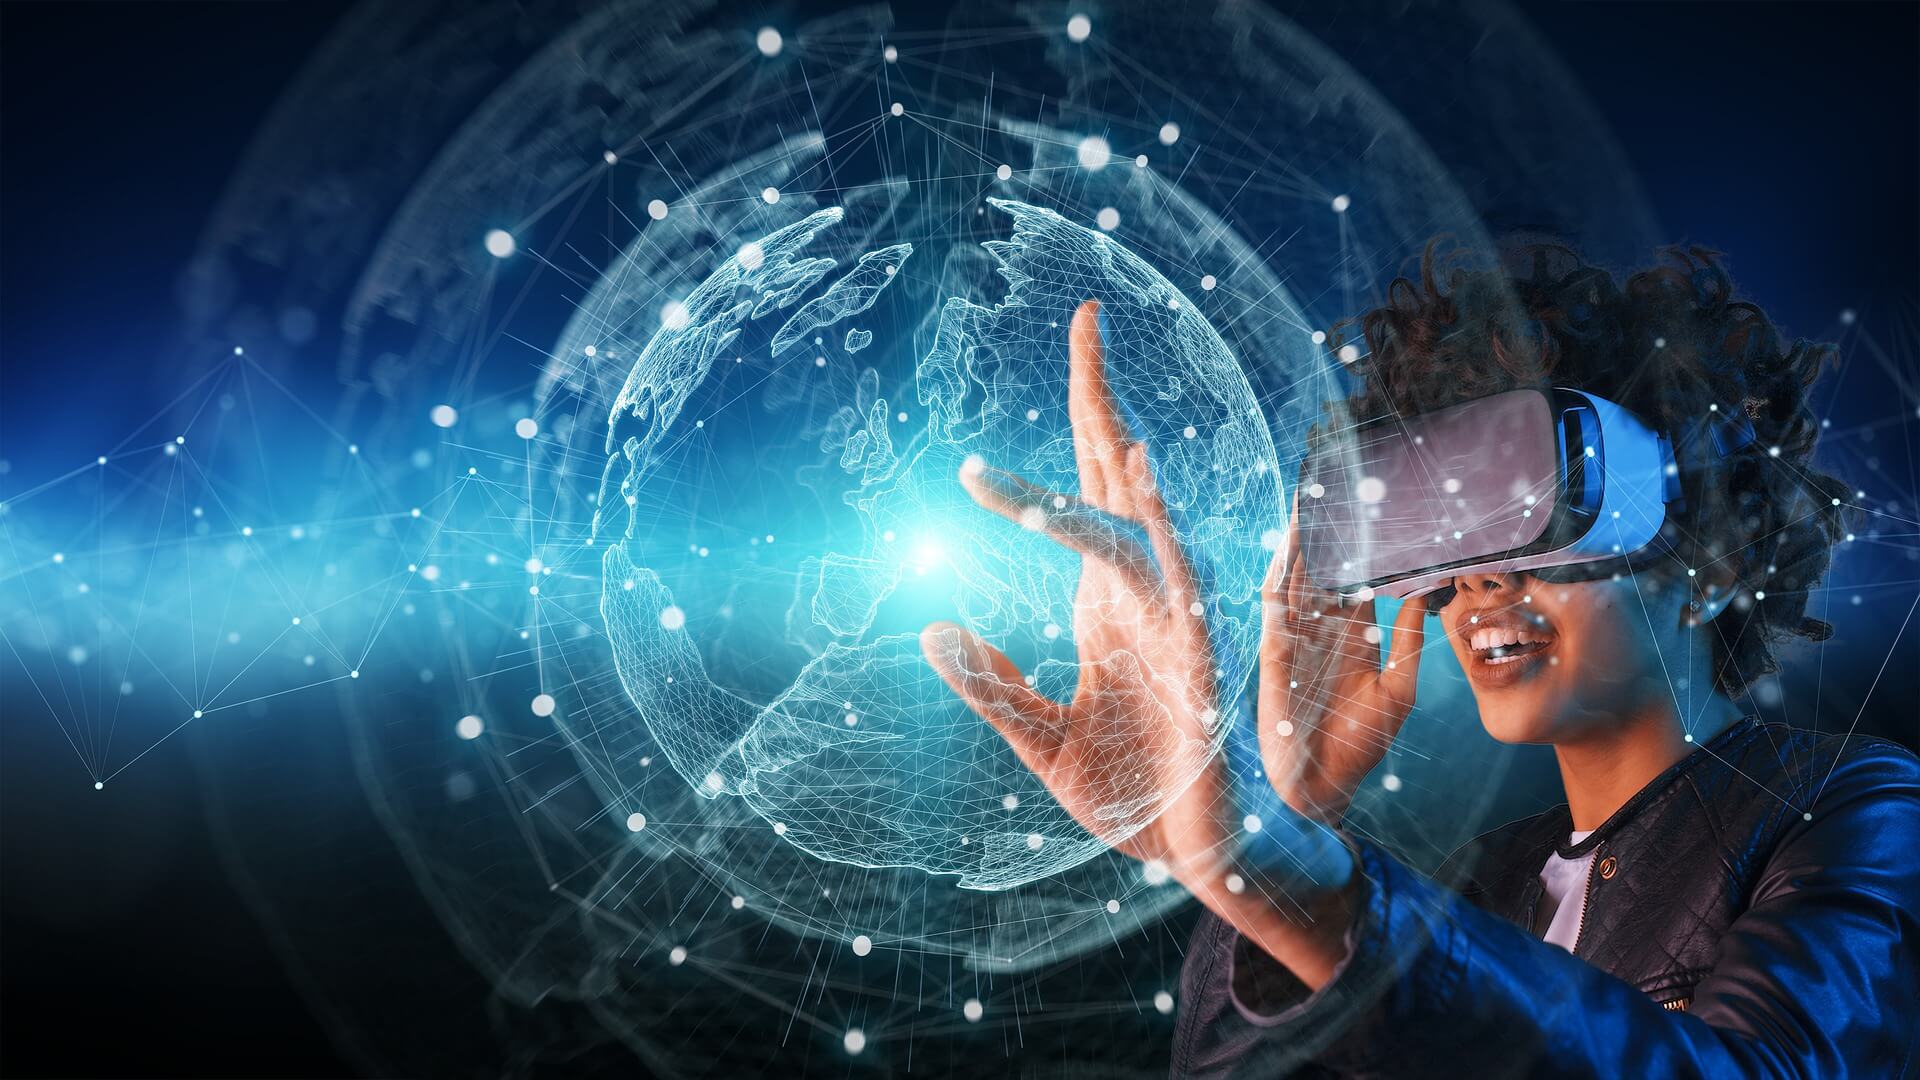 图片展示一位佩戴虚拟现实头盔的人，正伸手触碰前方呈现的三维数字地球，表现出科技与互动的融合。